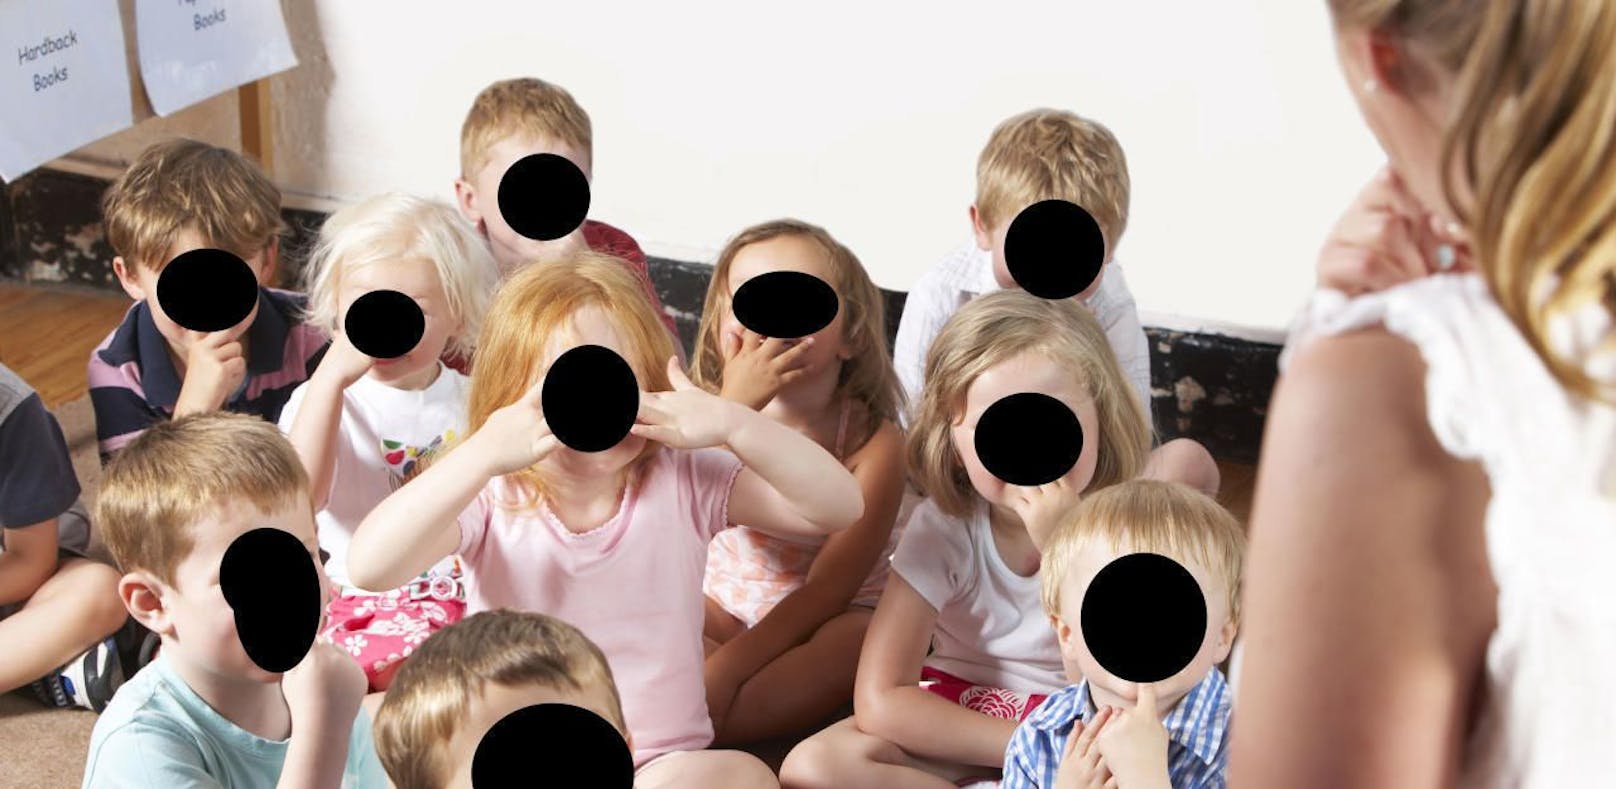 (Symbolbild) So in etwa sahen die Gesichter der Kinder in den Fotoalben aus: Alle bis auf eines waren geschwärzt.